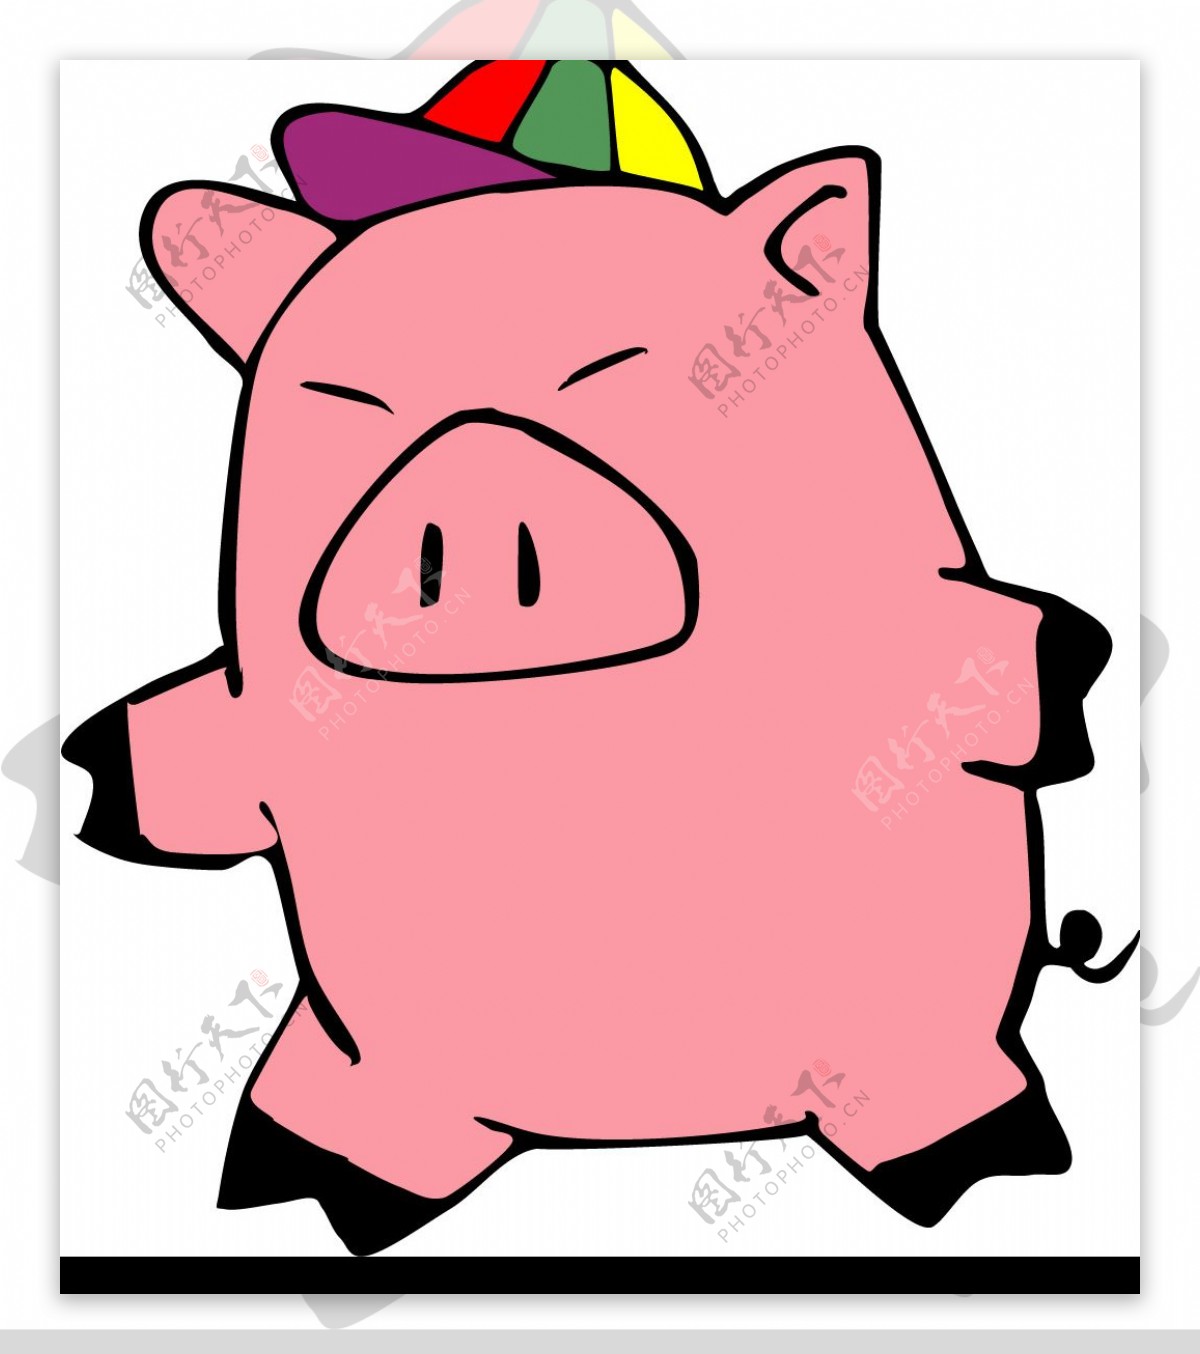 猪的漫画图片